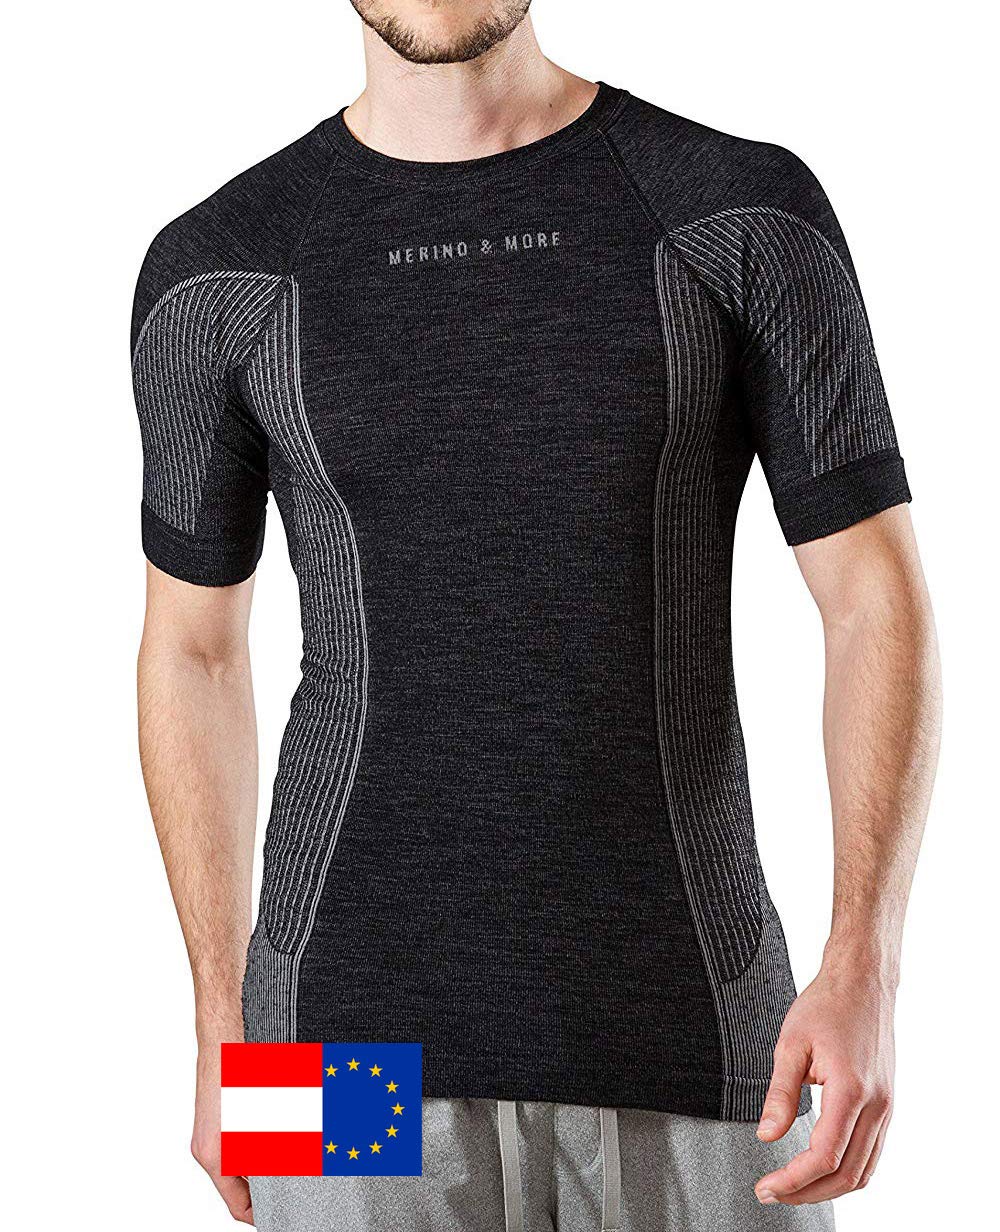 Merino & More Merino Shirt Herren - Premium Funktionsunterwäsche aus hochwertiger Merinowolle - Sport - Funktionsshirt - Kurzarm schwarz-grau Gr. S